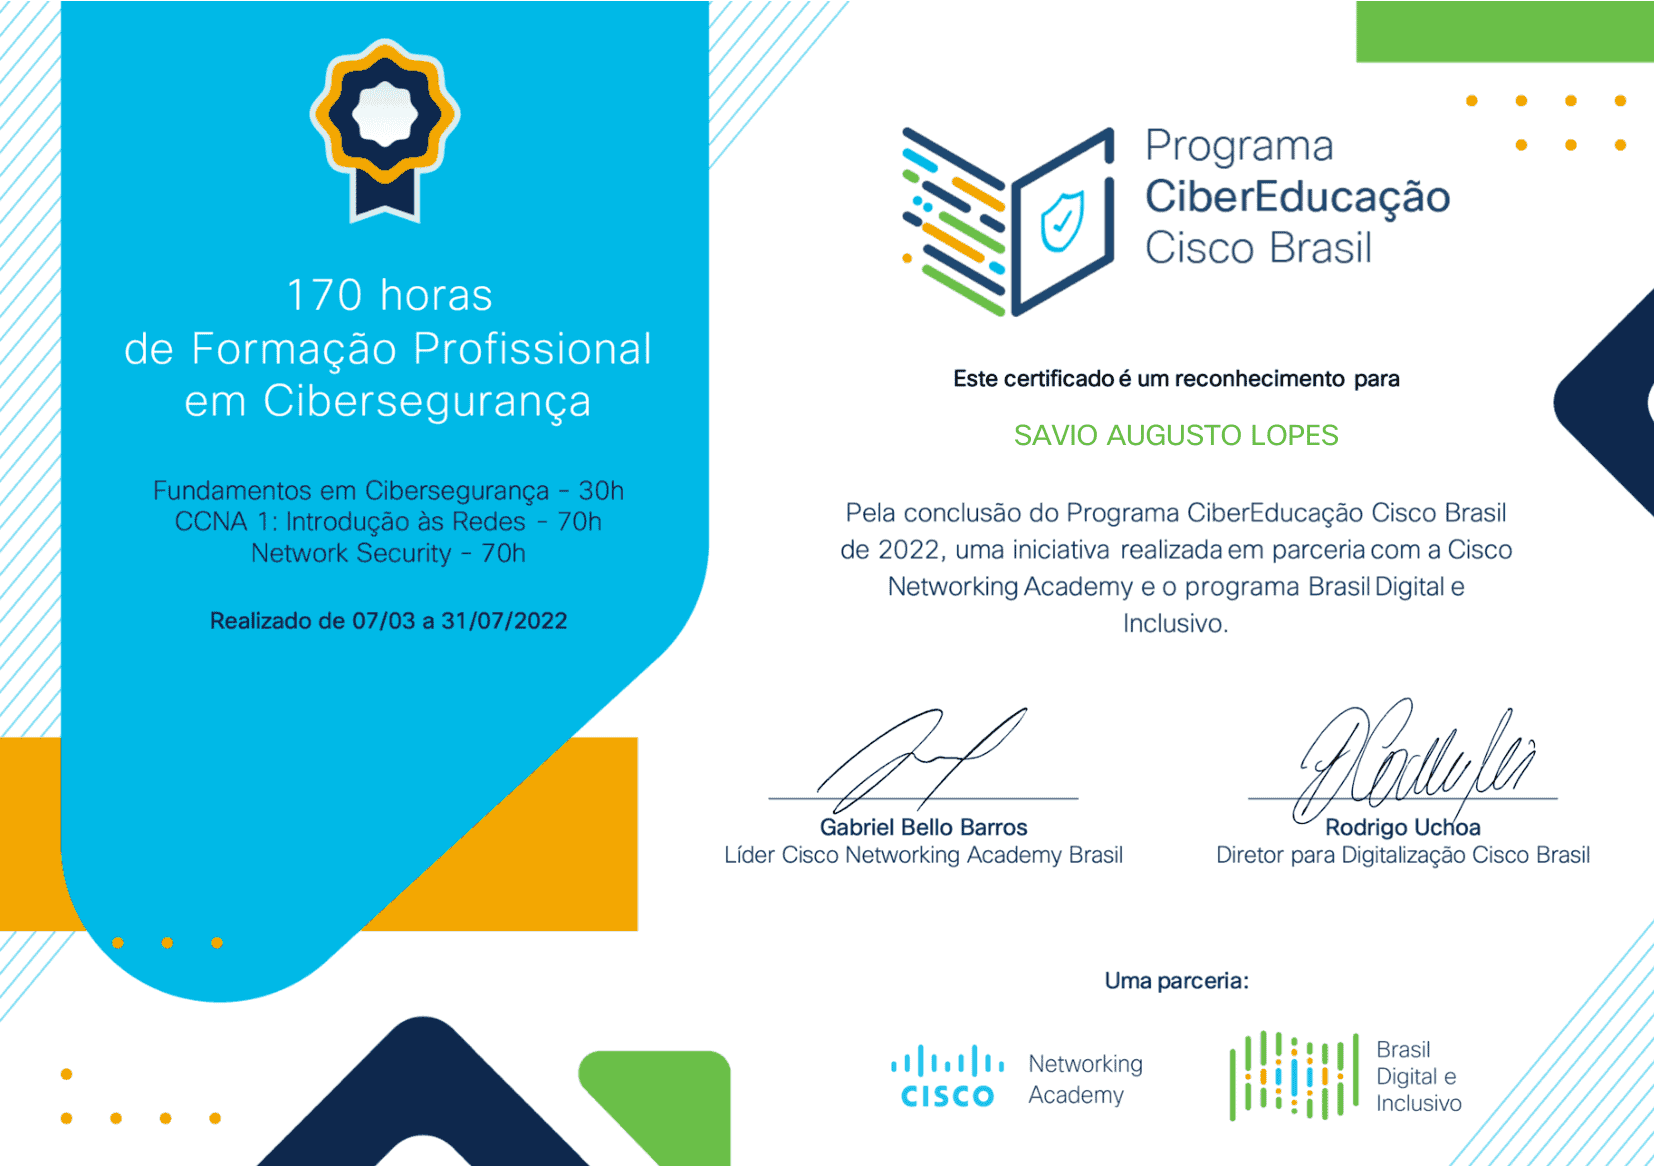 Programa CiberEducação Cisco Brasil (Cisco Networking Academy)